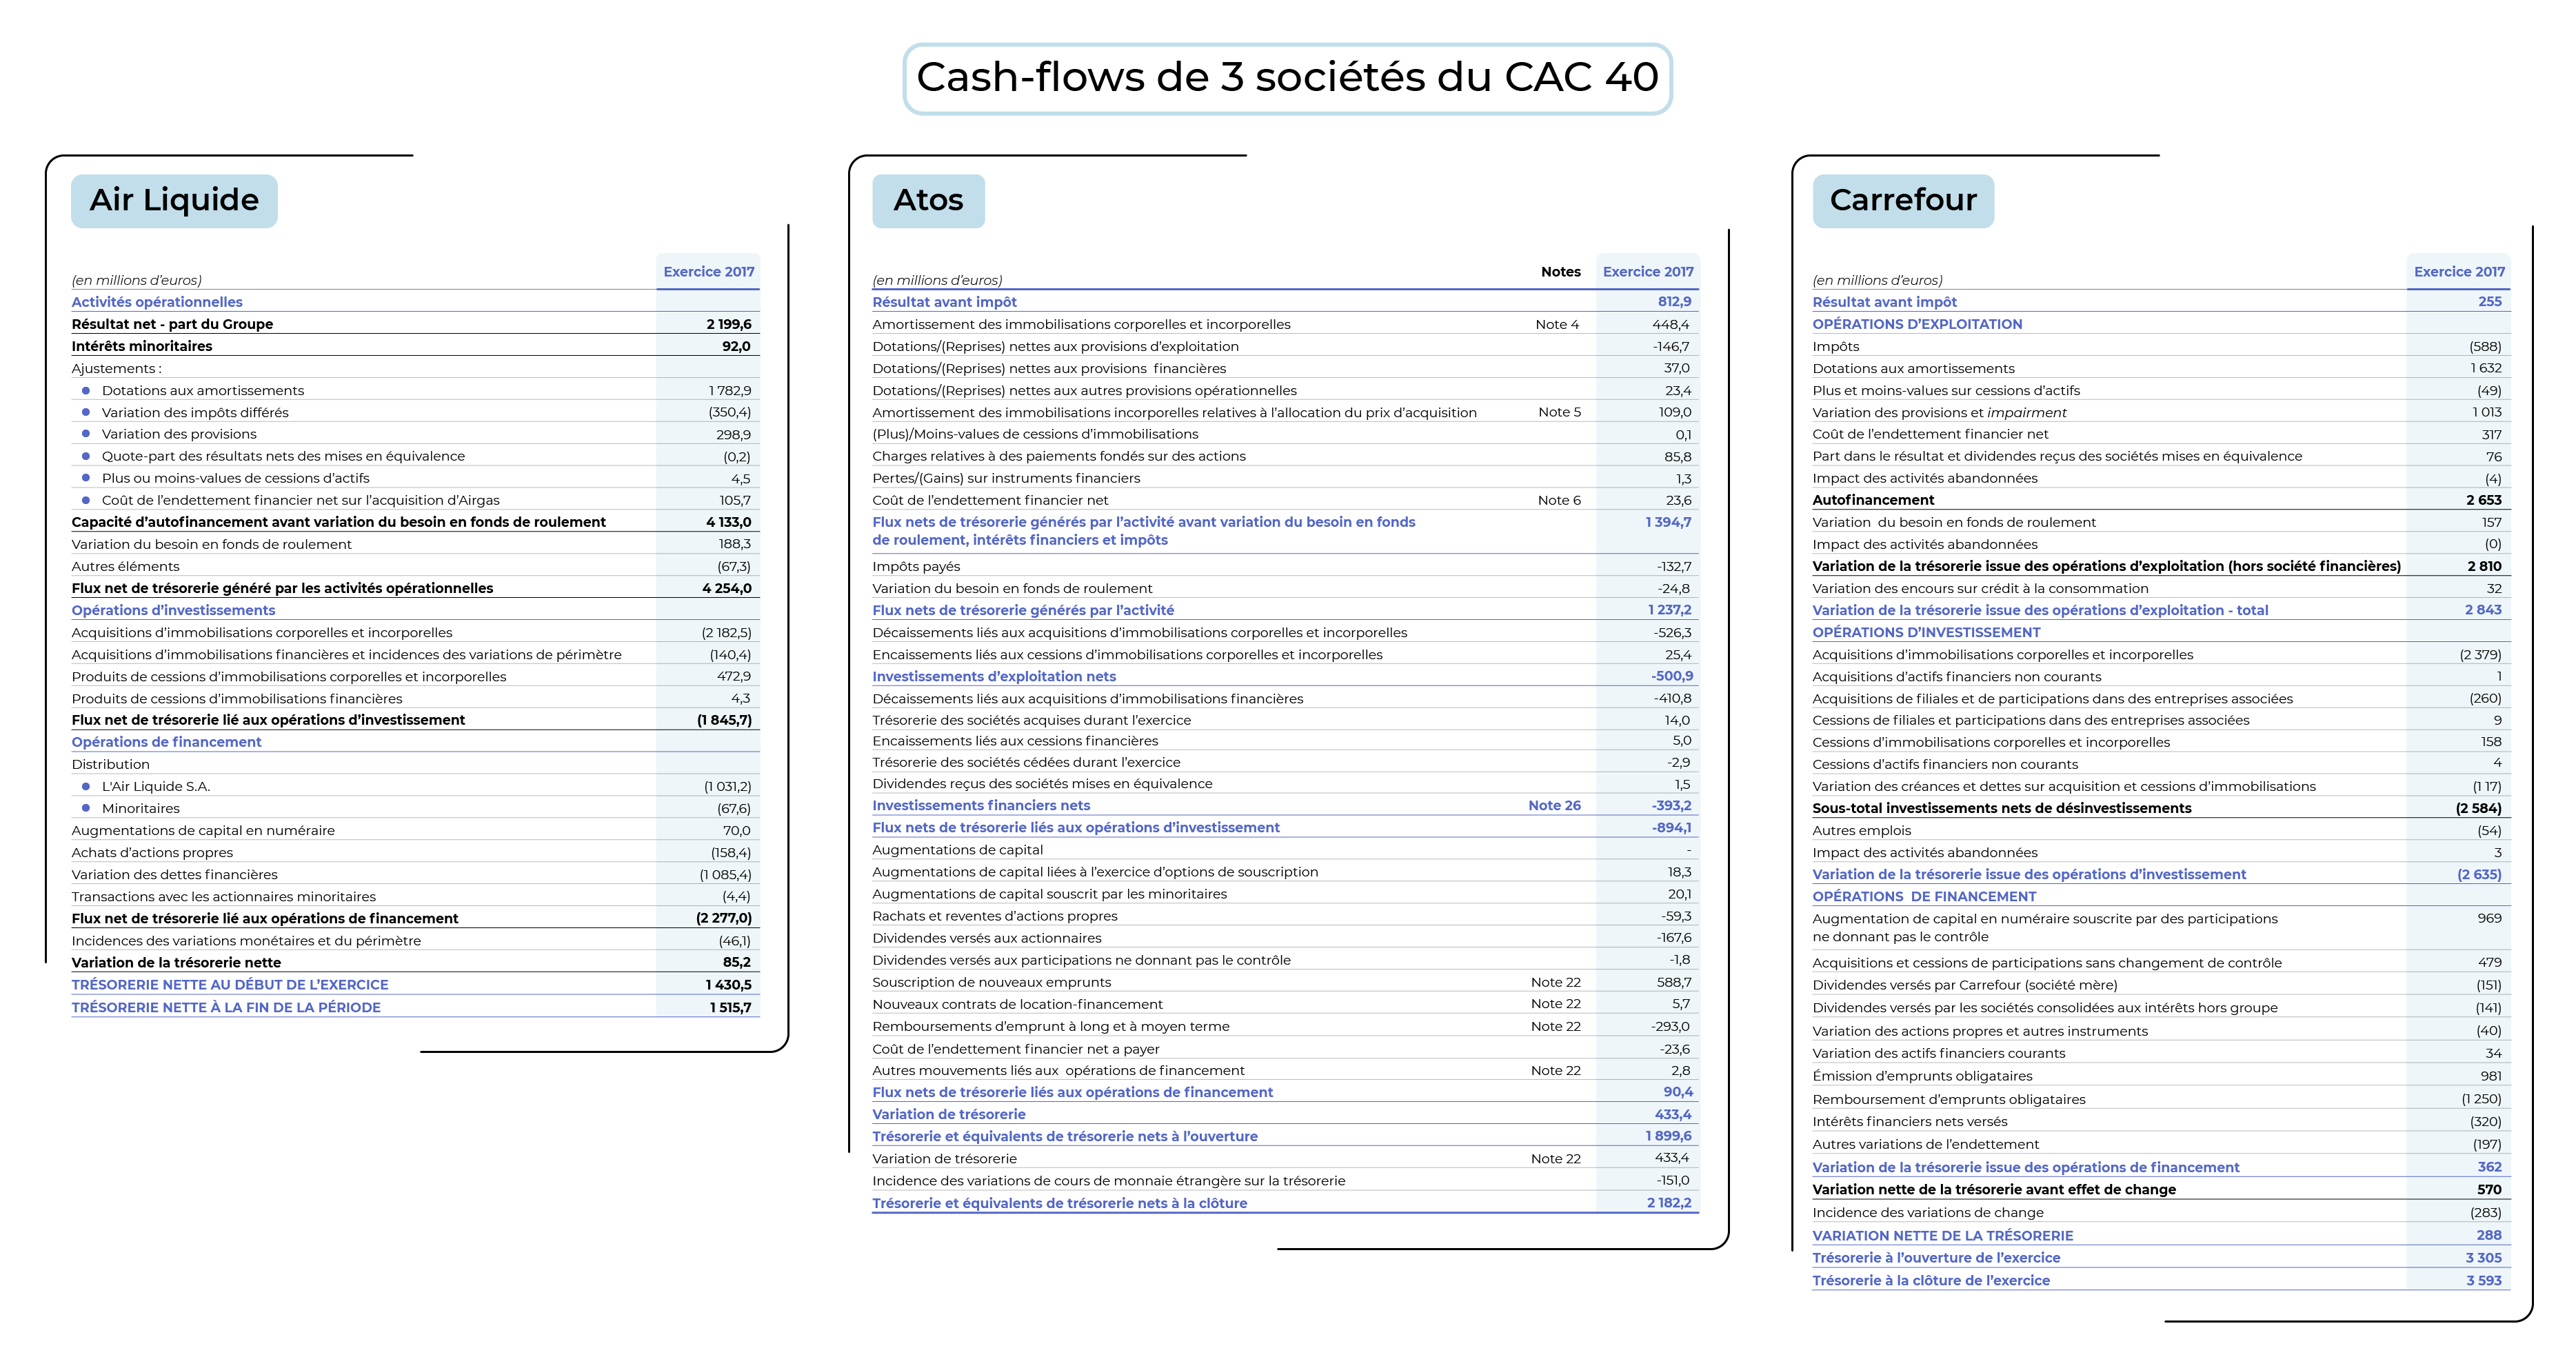 Cash-flow consolidés d'une entreprise de service (Atos), d'une entreprise de distribution (Carrfour) et d'une société industrielle (Air Liquide).